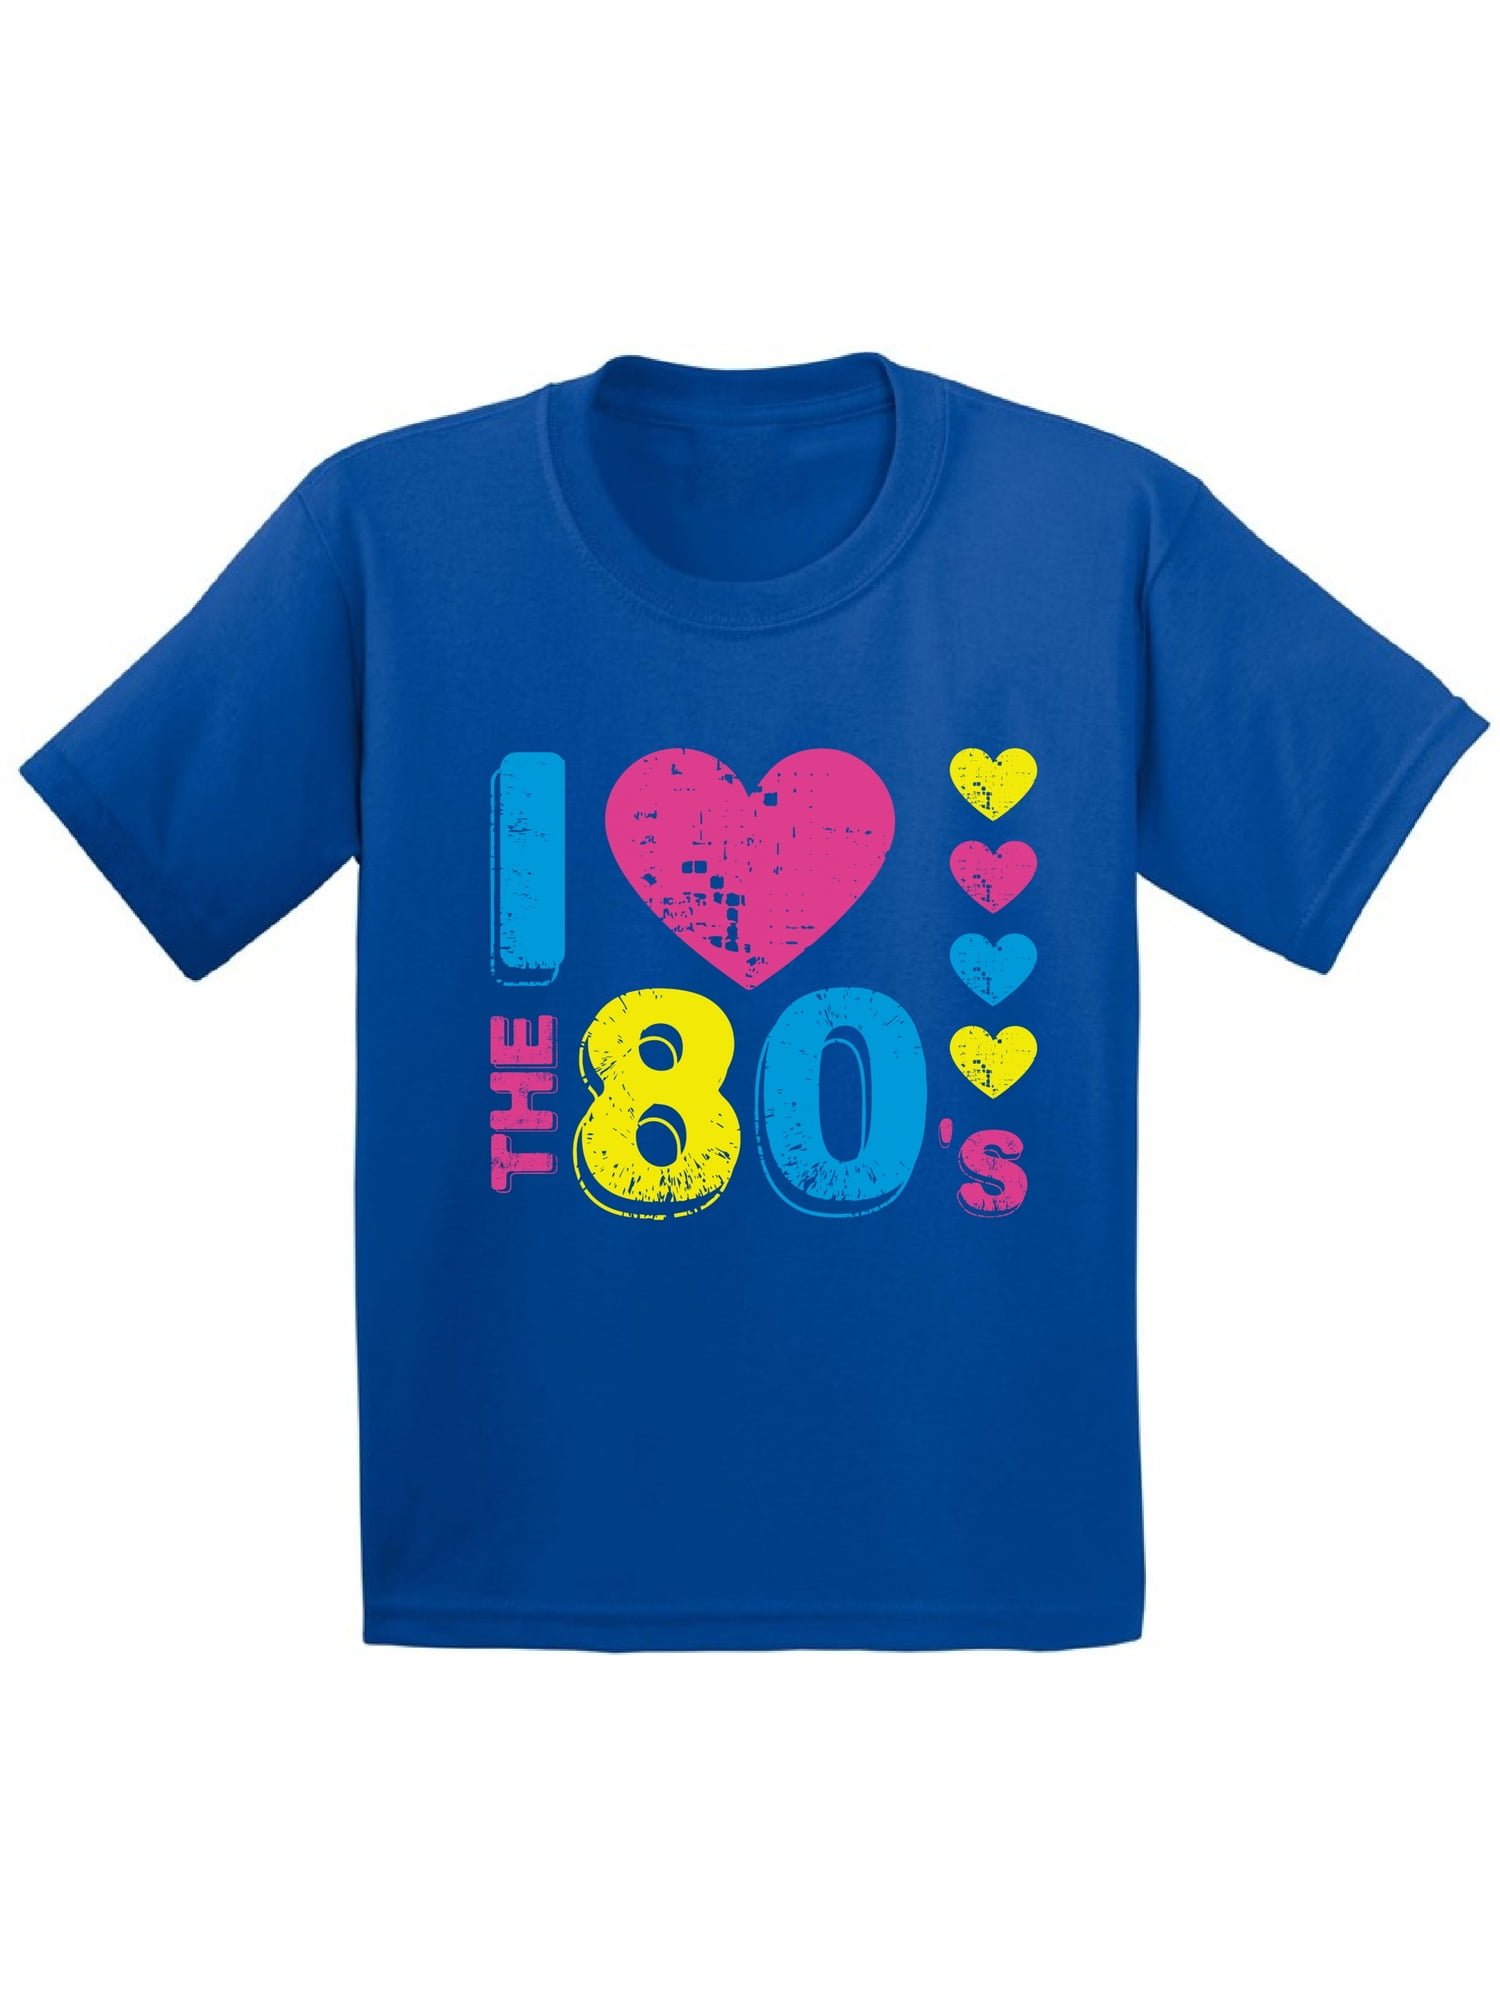 Tshirt Kids 80's T Shirt 